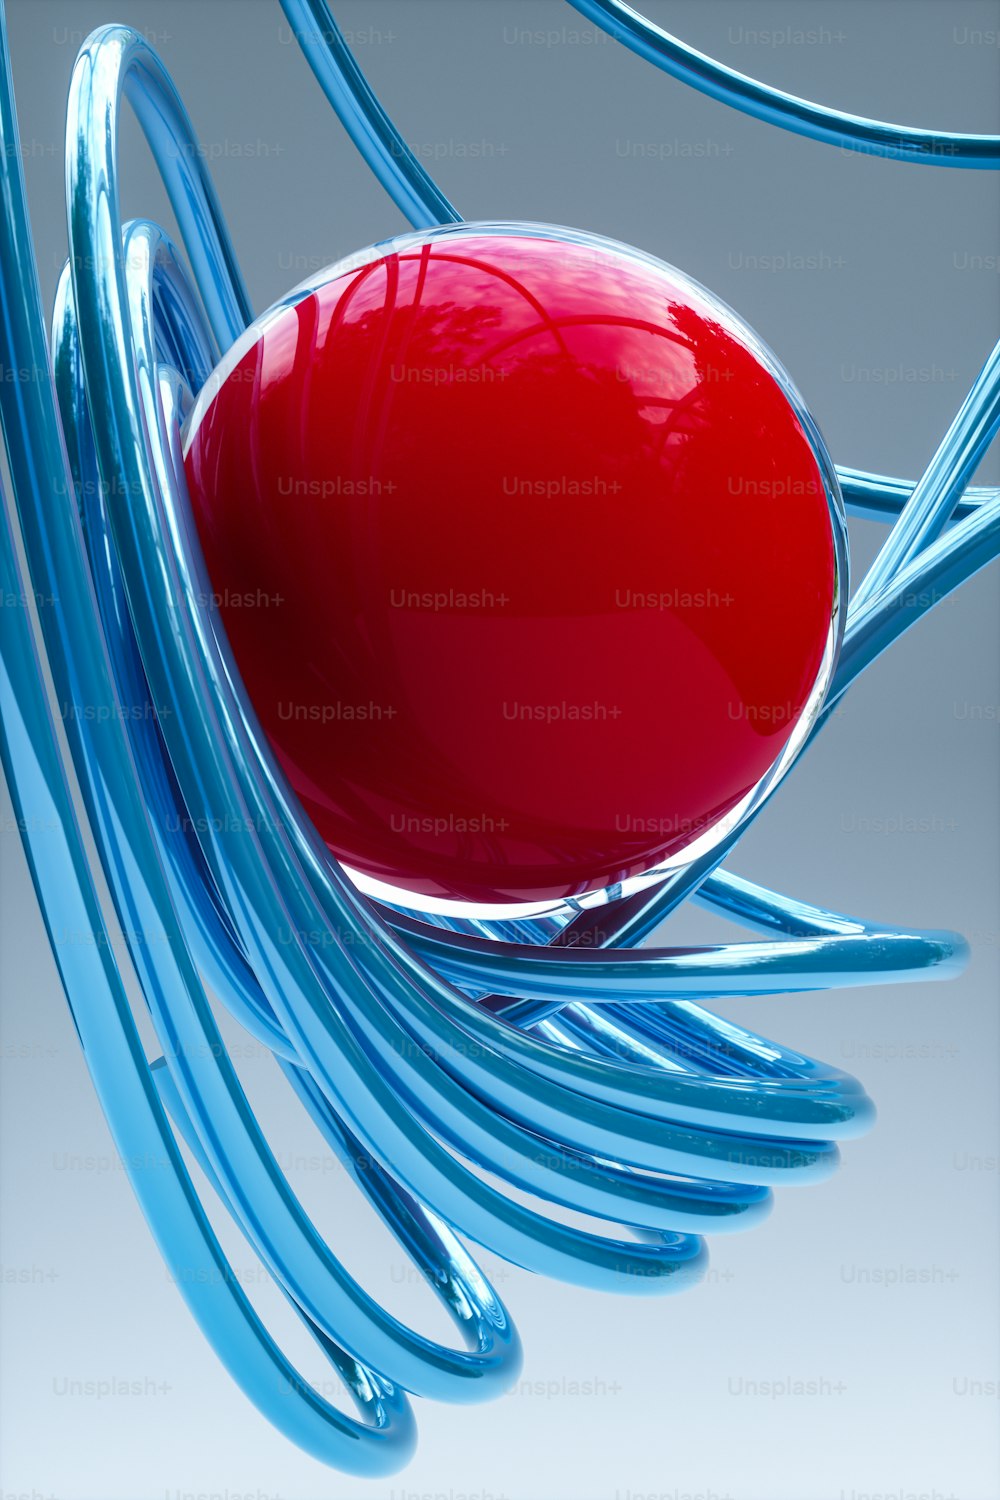 un oggetto rosso seduto sopra un oggetto blu